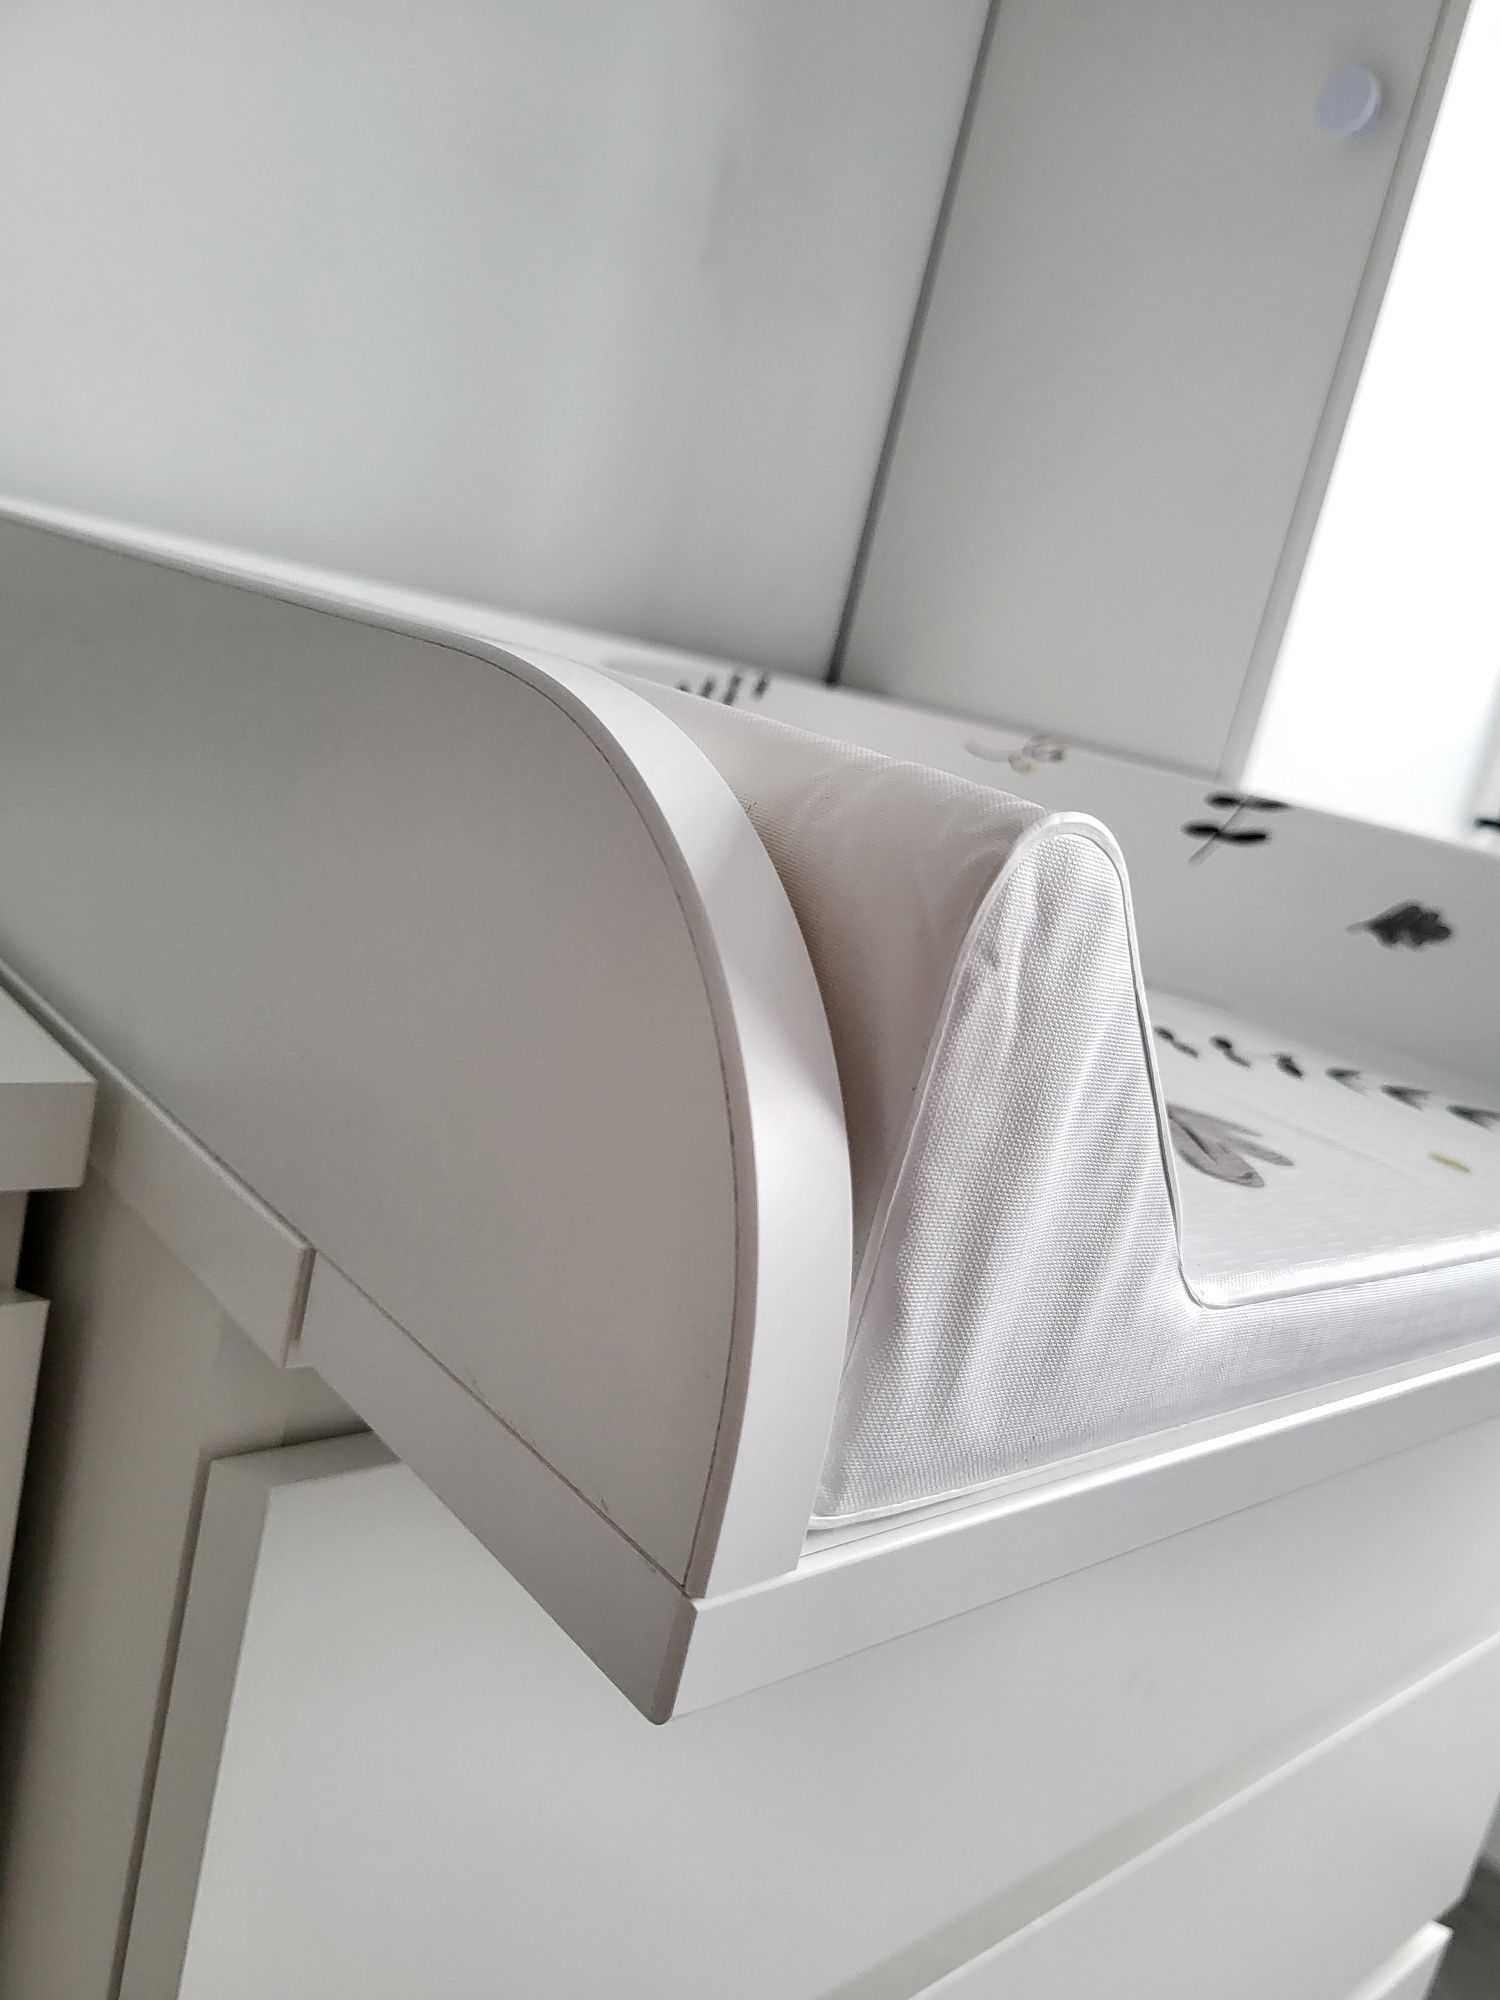 Nakładka przewijak na komodę Malm biała Ikea + usztywniony przewijak